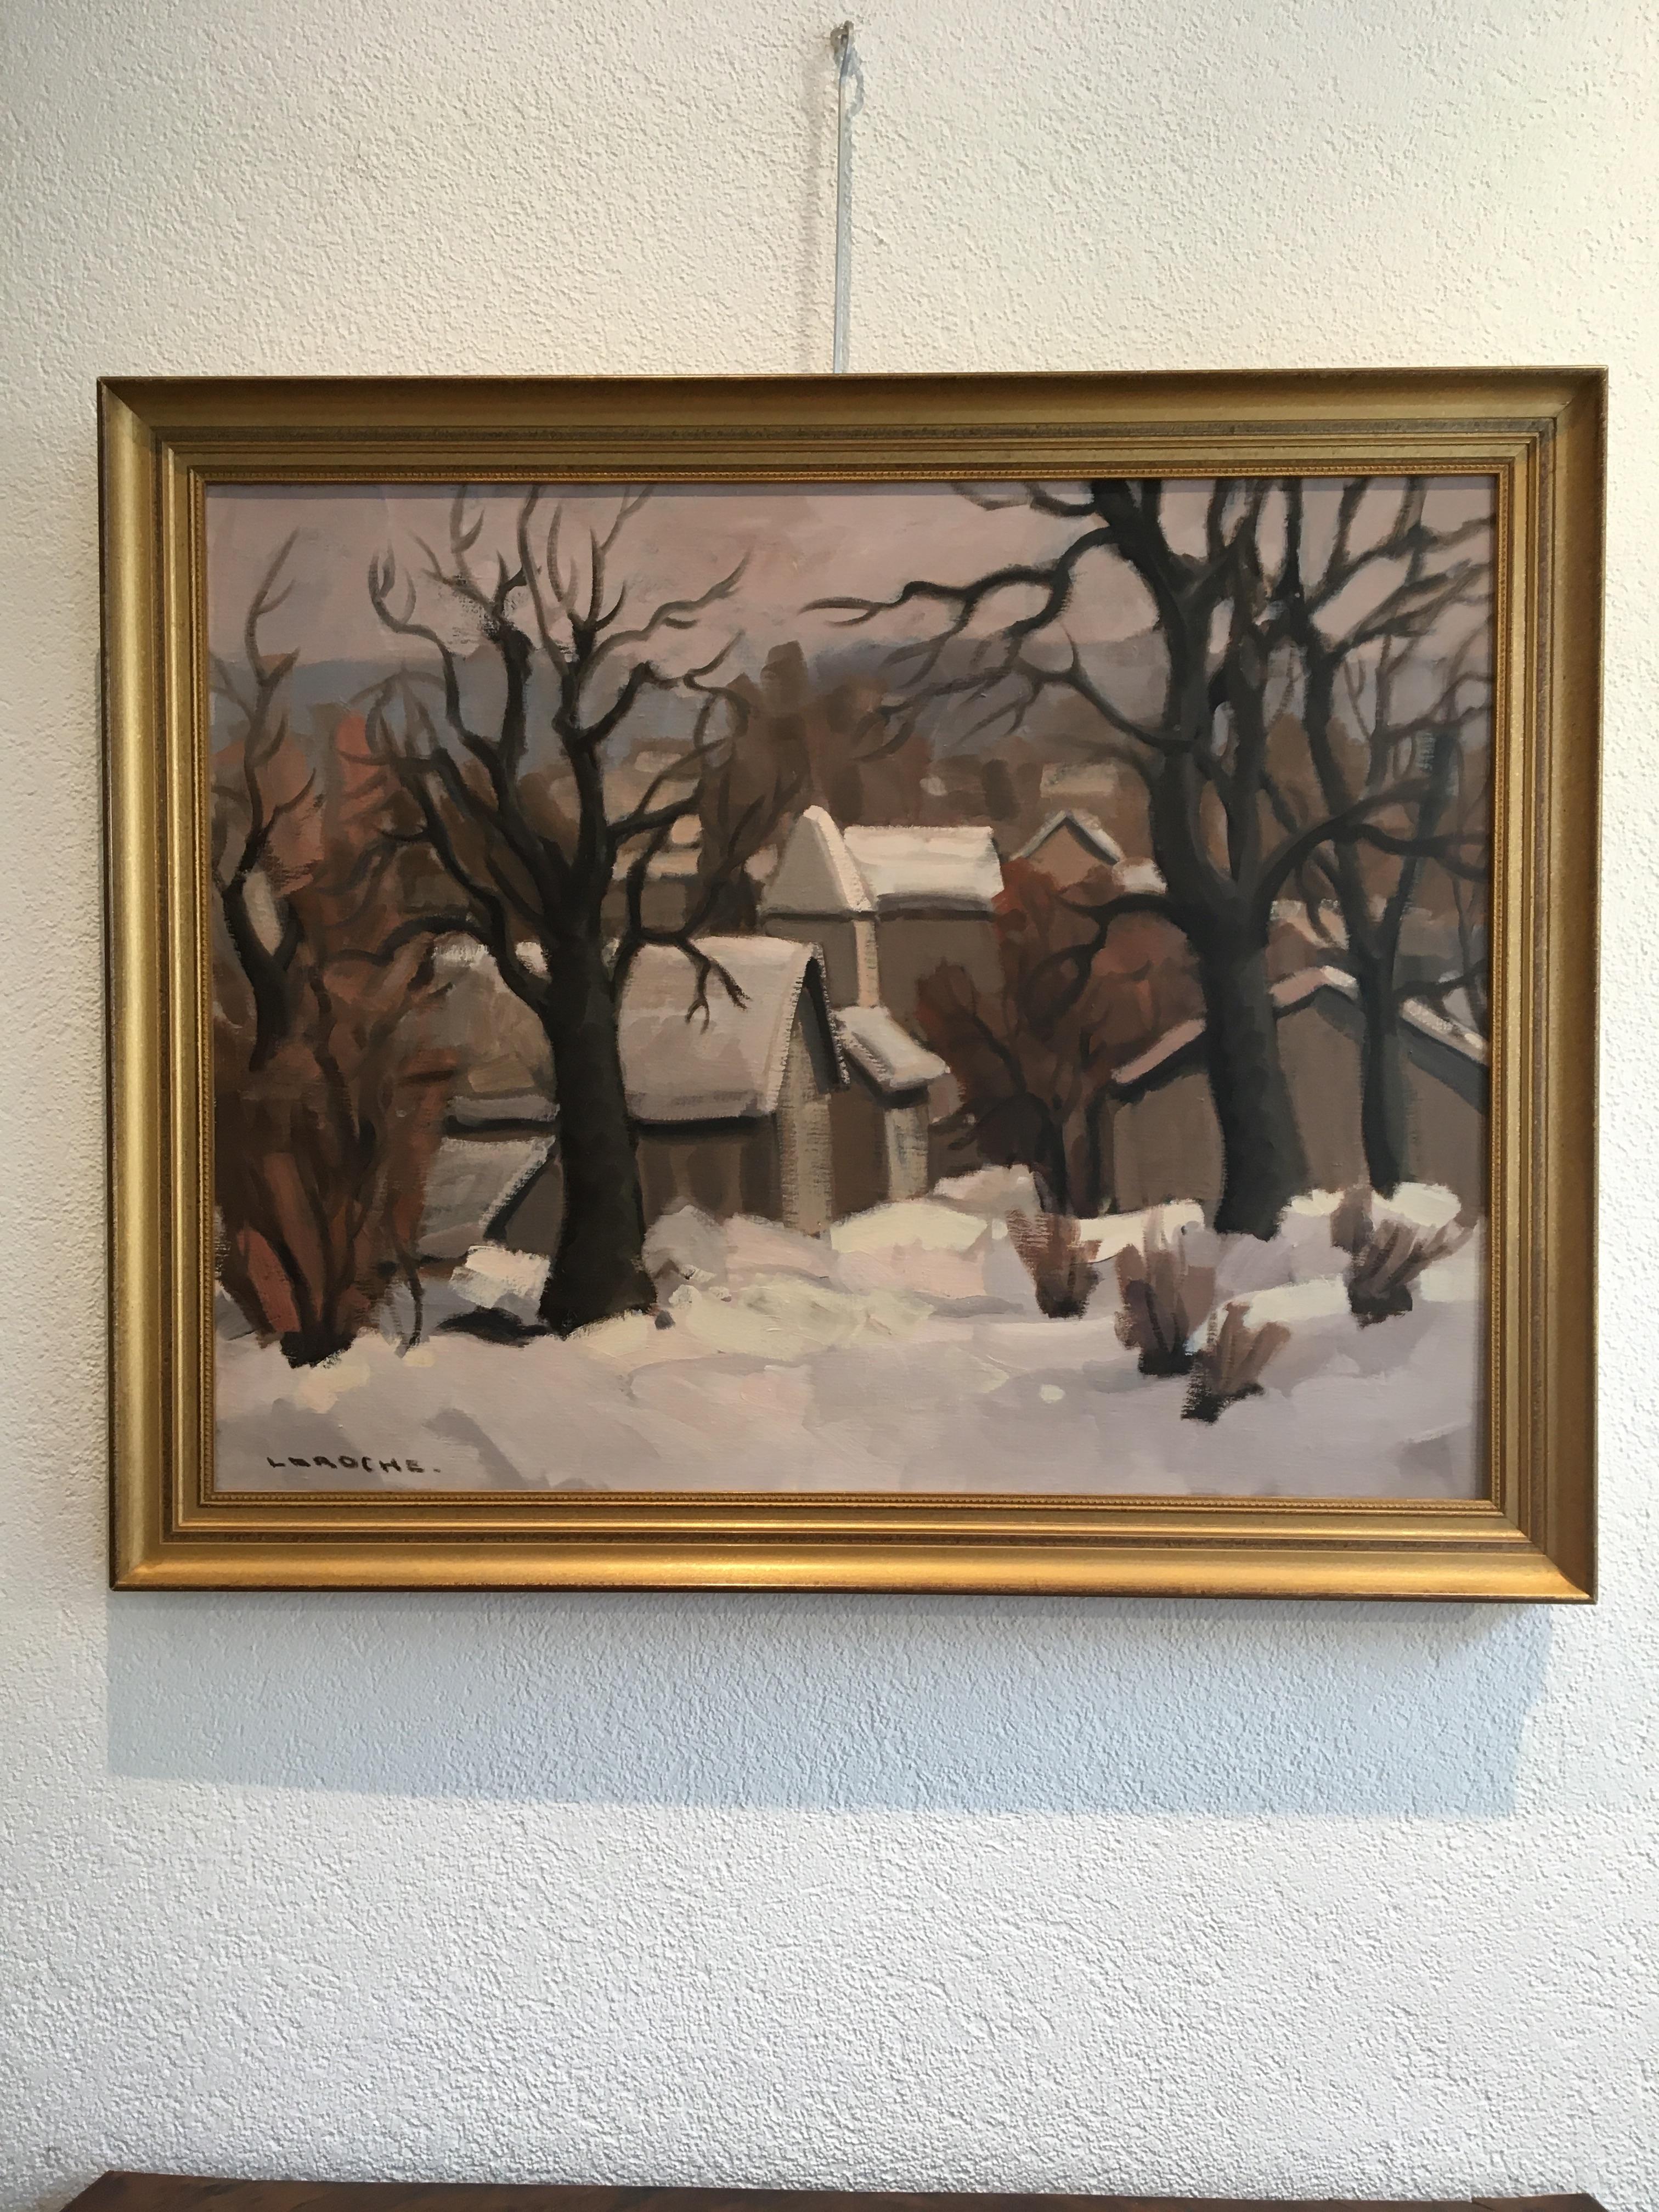 Winter landscape - Painting by Laroche